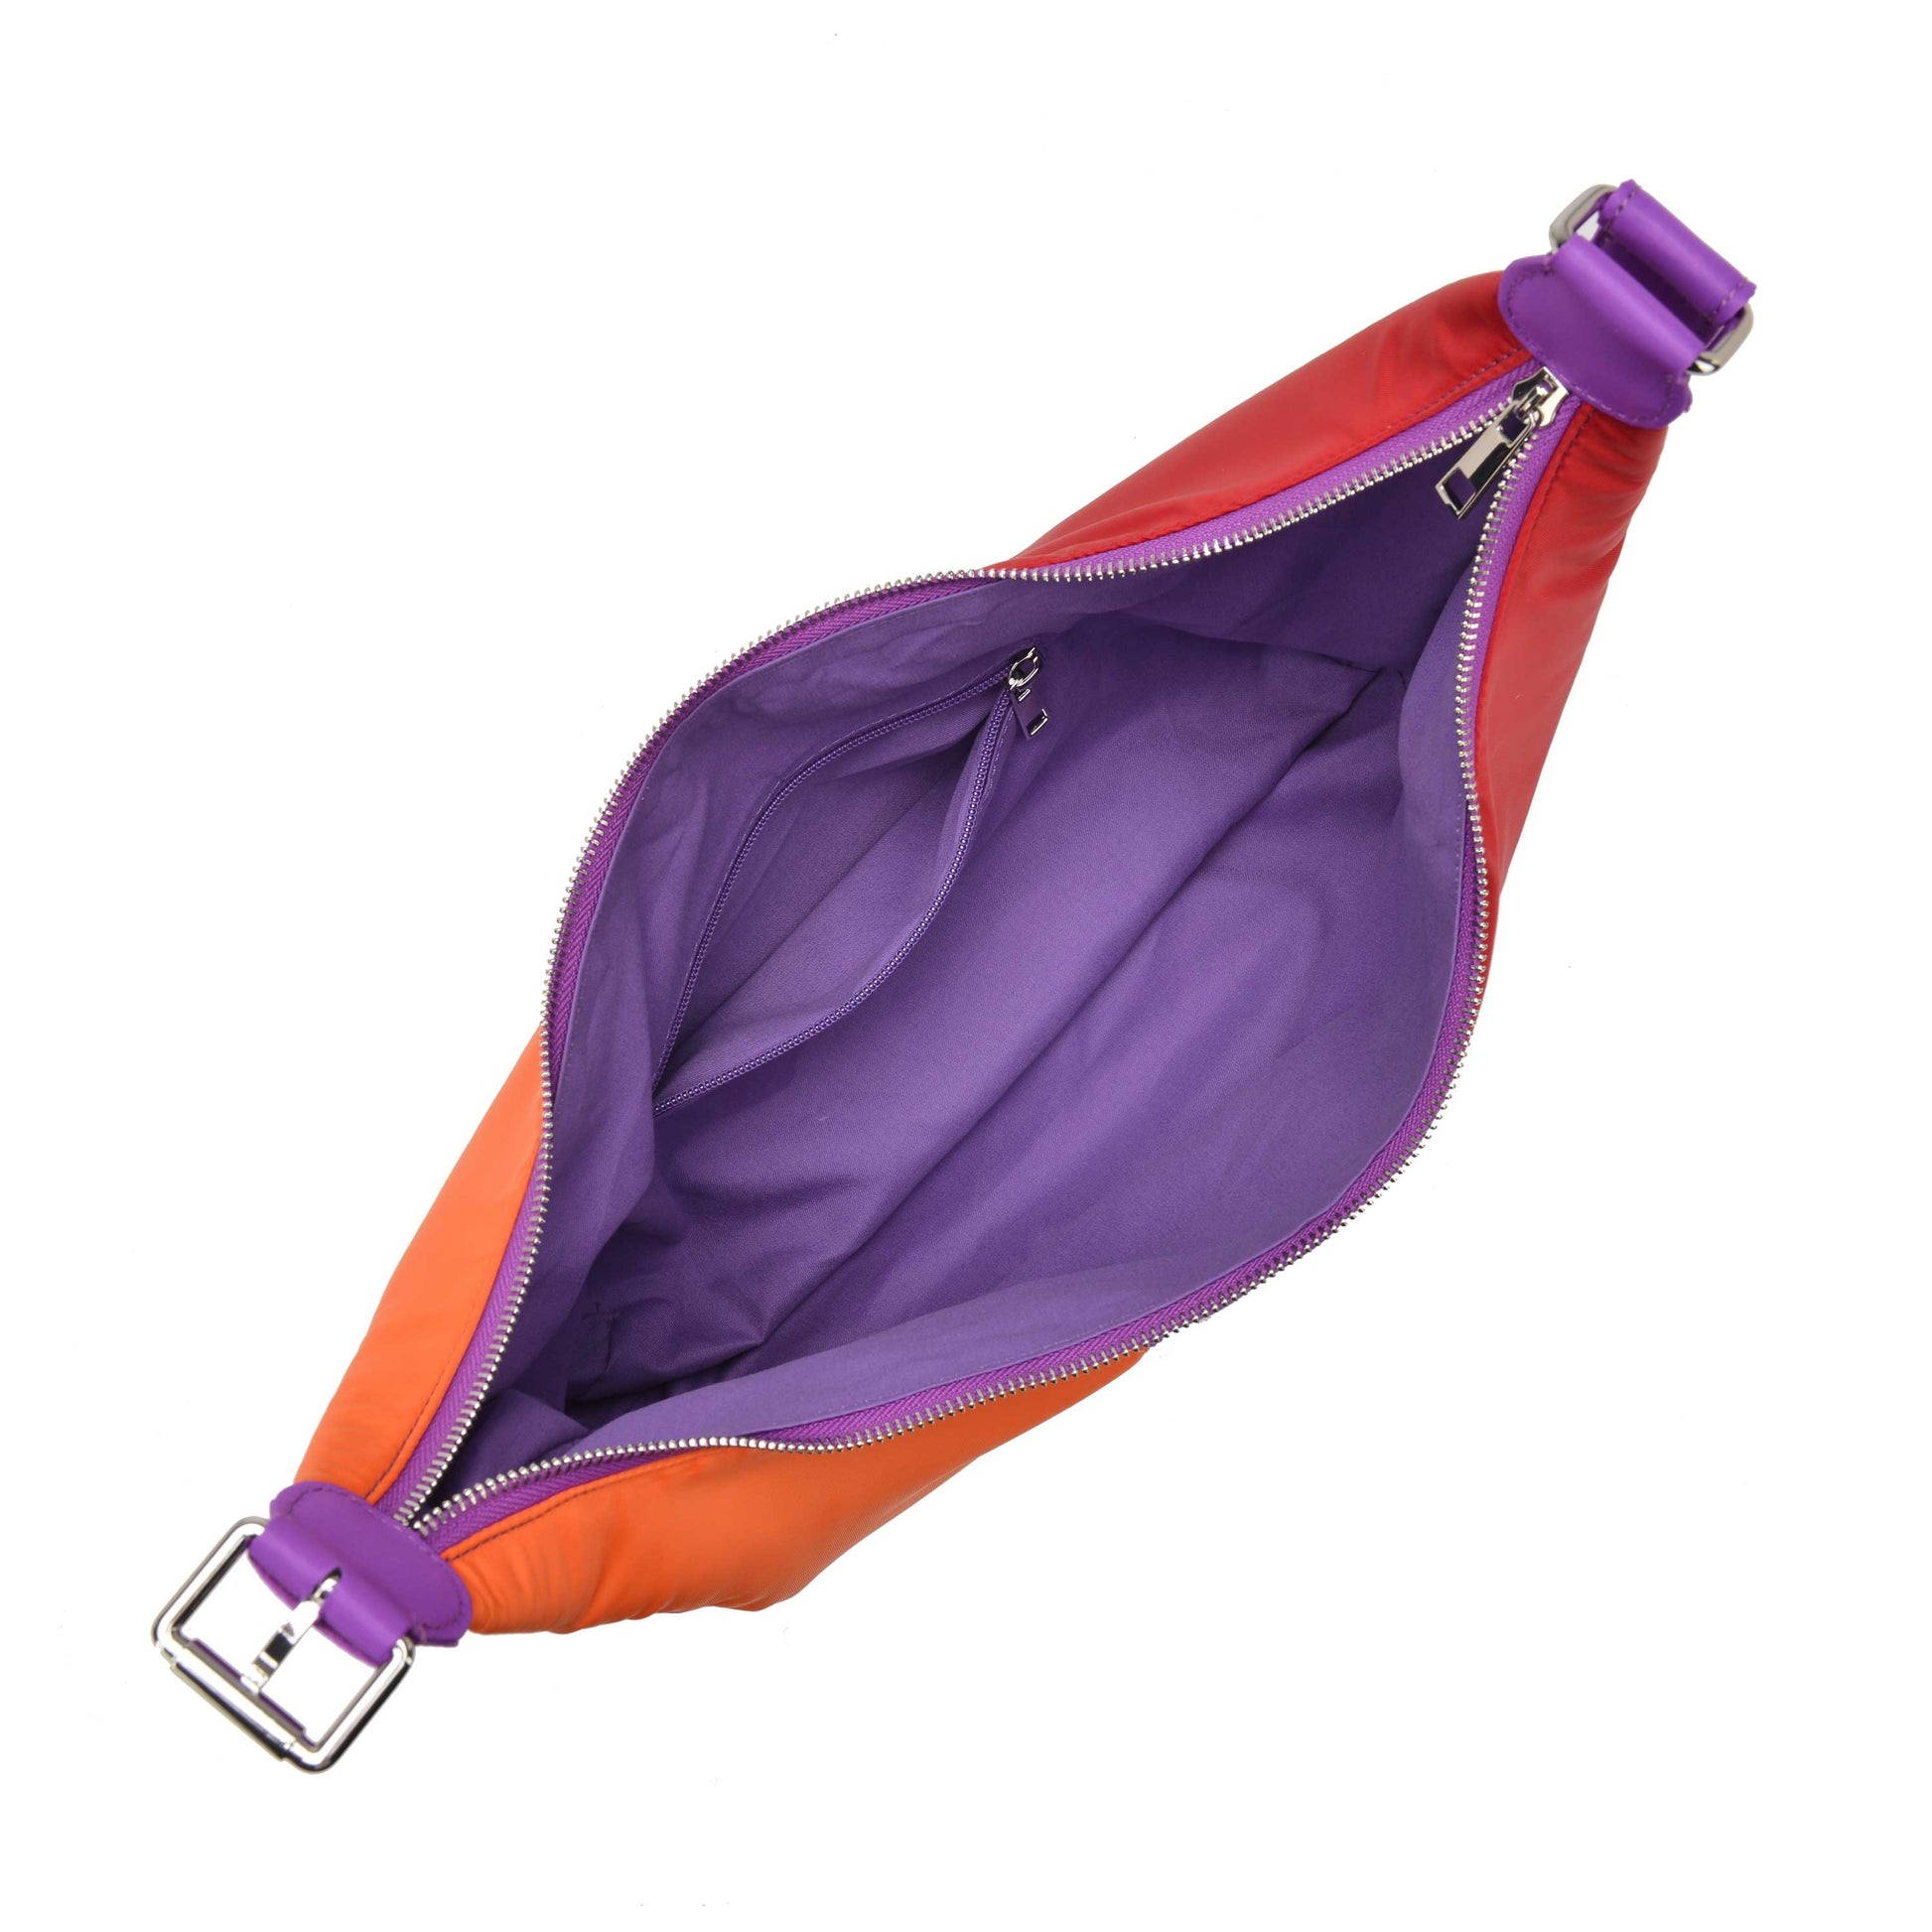 Núnoo Stella Recycled Nylon Purple Susmie Shoulder bags Purple